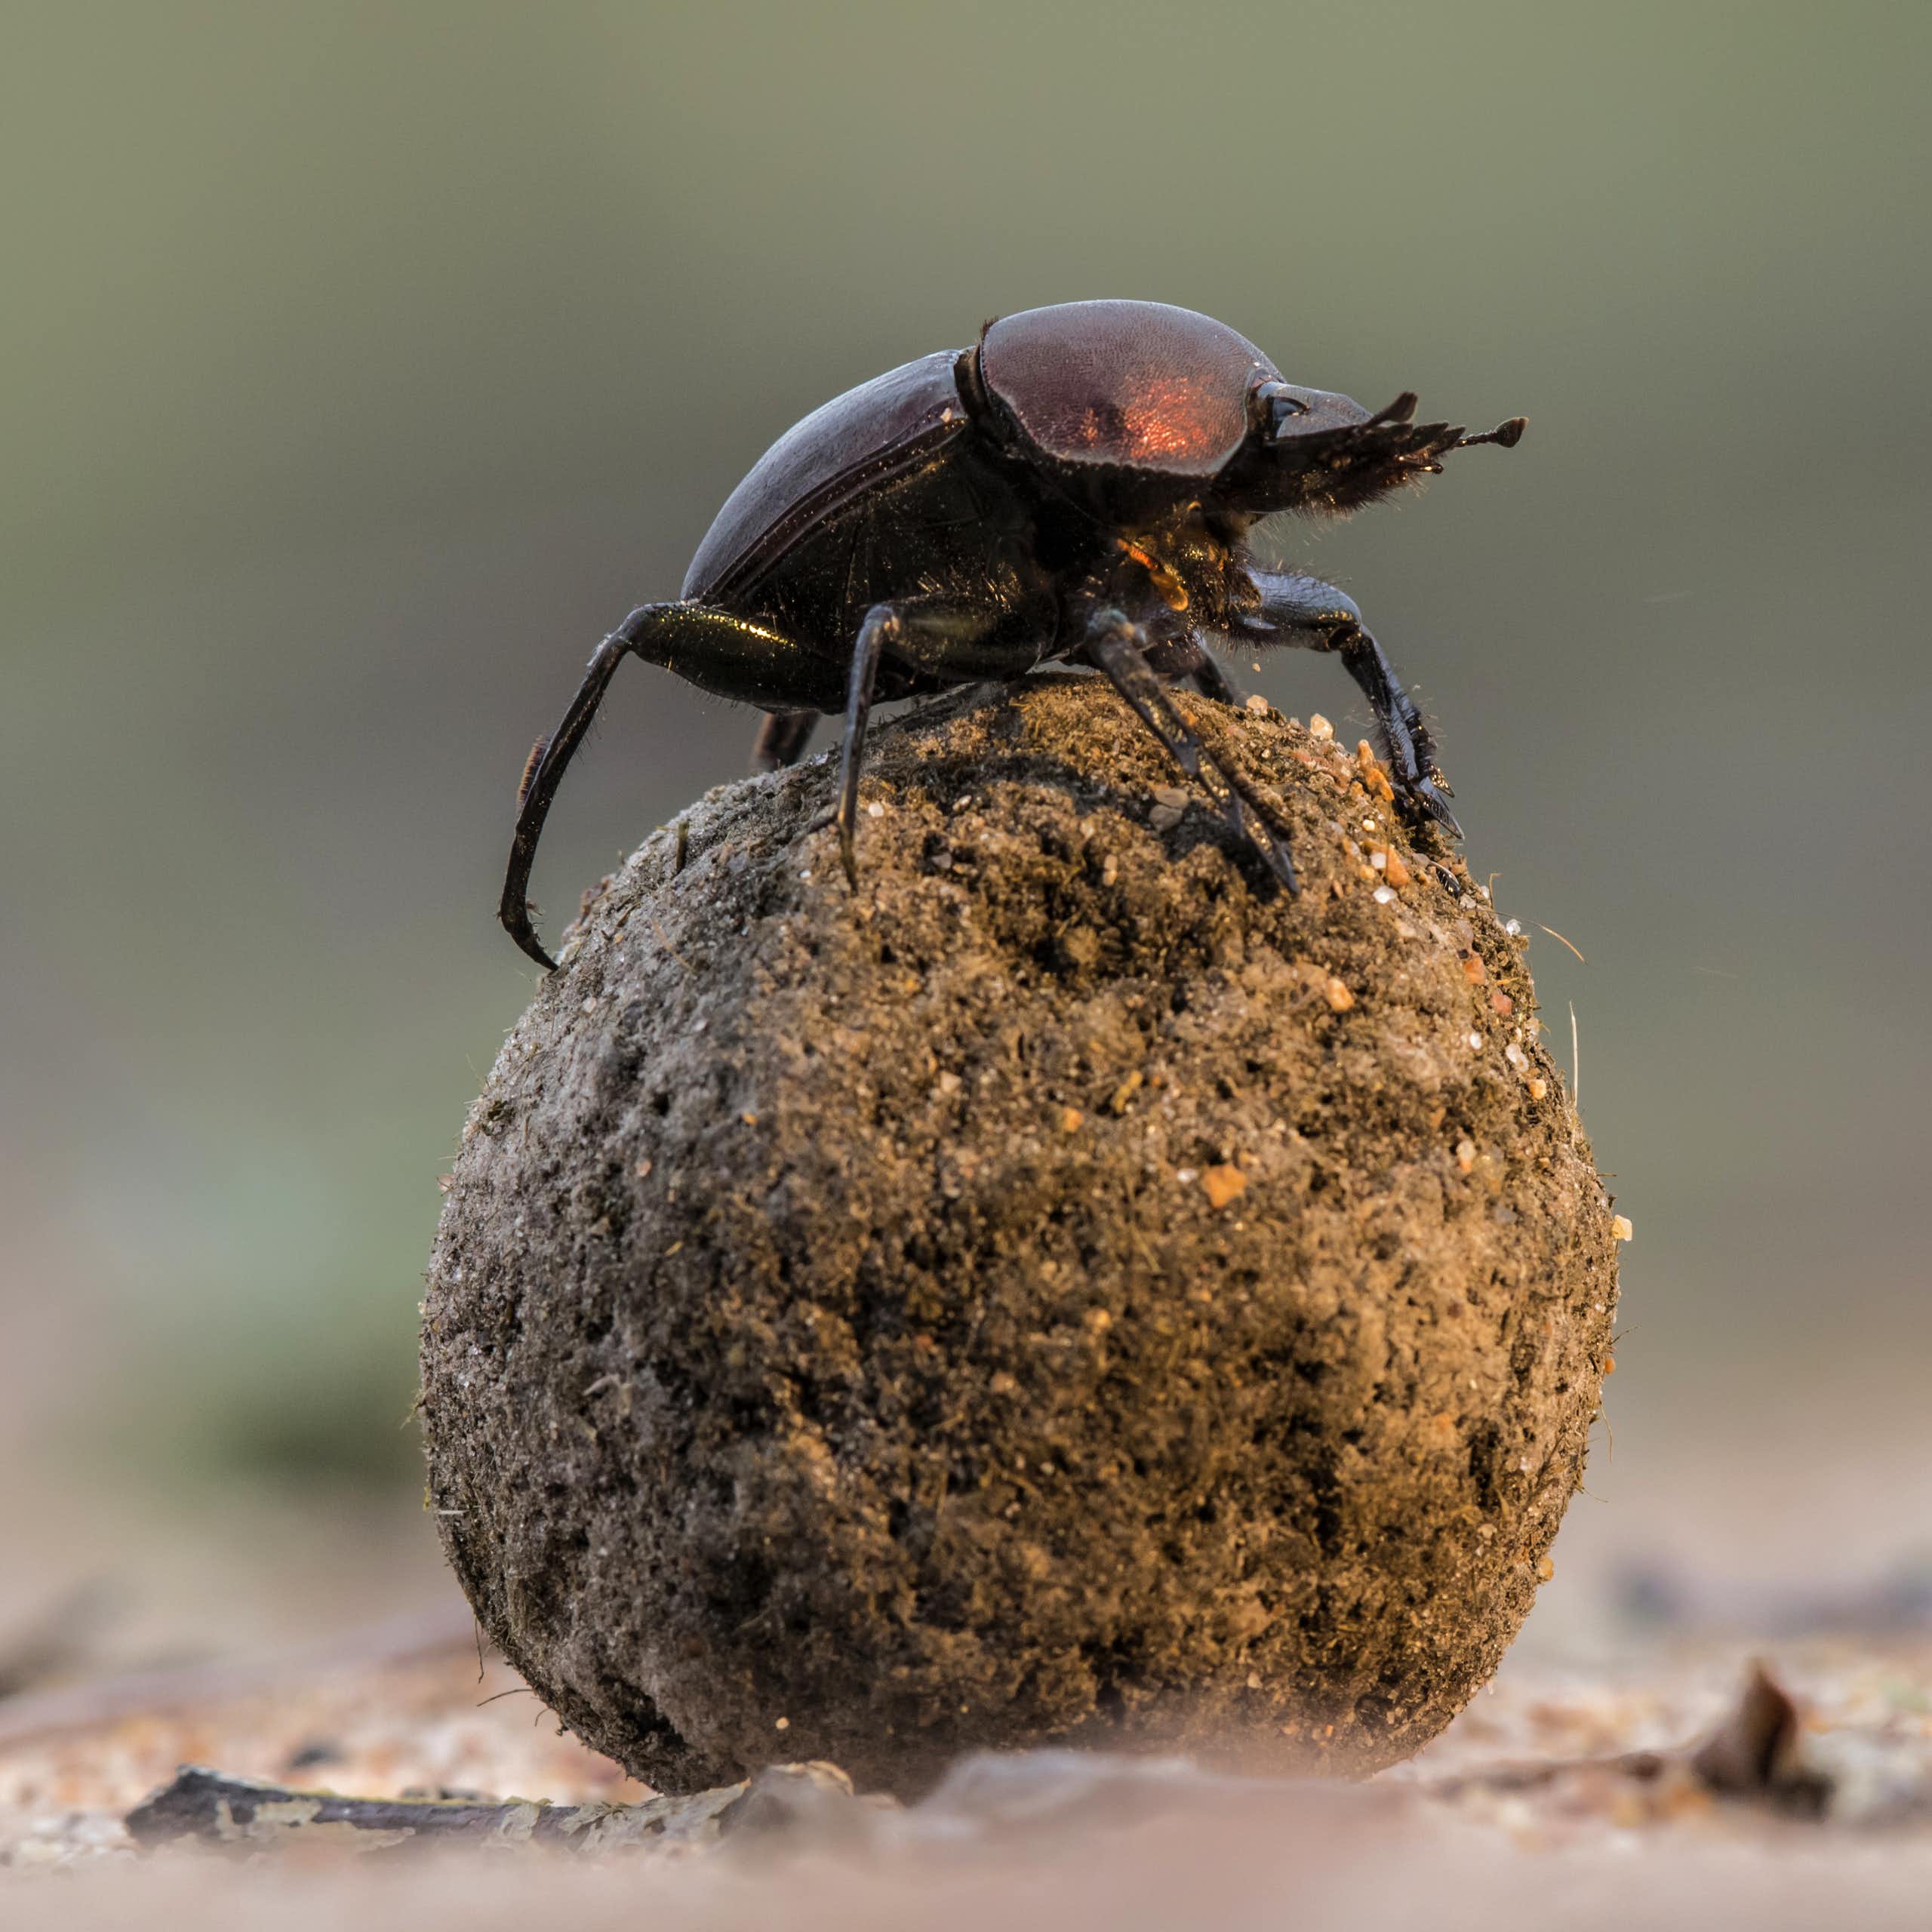 Dung beetle atop dung ball